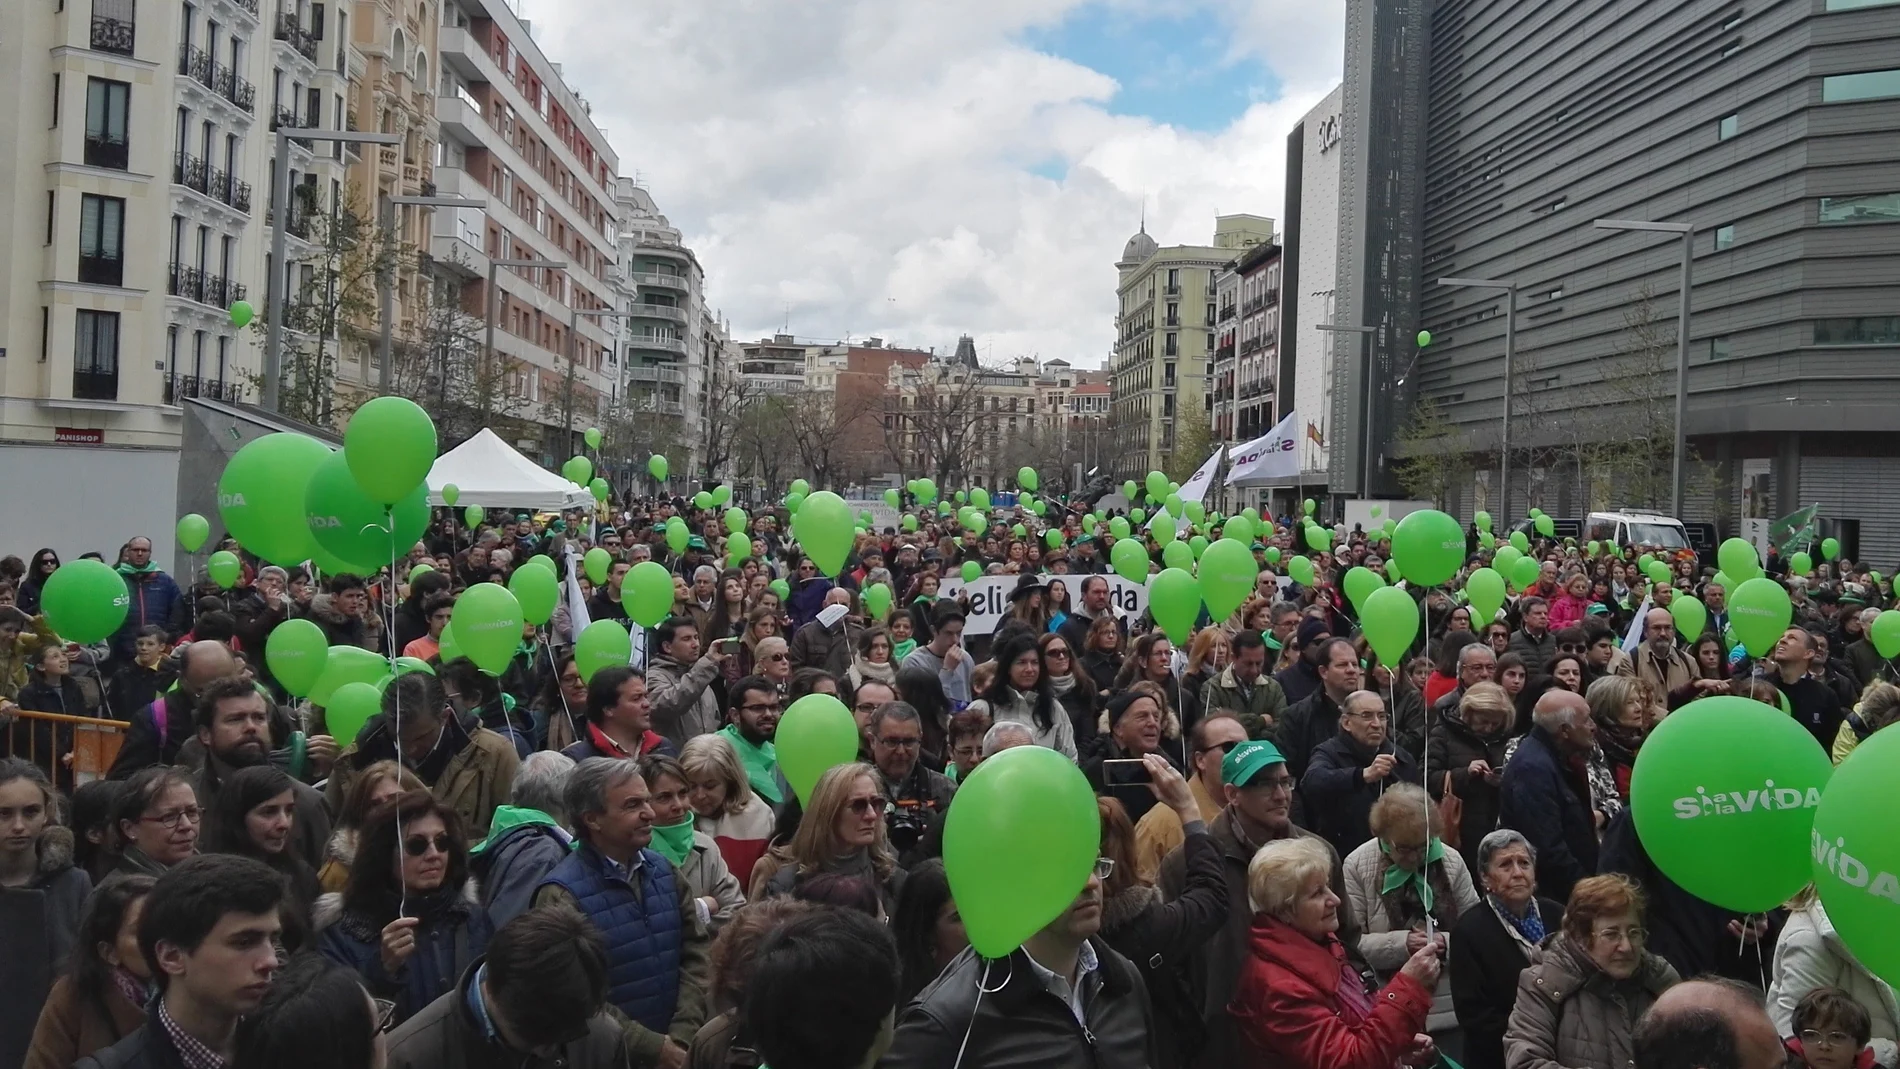  Fotografía facilitada por La Plataforma Sí a la Vida, que cuenta con más de 500 asociaciones adheridas, que ha reunido en en la plaza de Felipe II de Madrid a cientos de personas para celebrar, un año más, el Día Internacional de la Vida